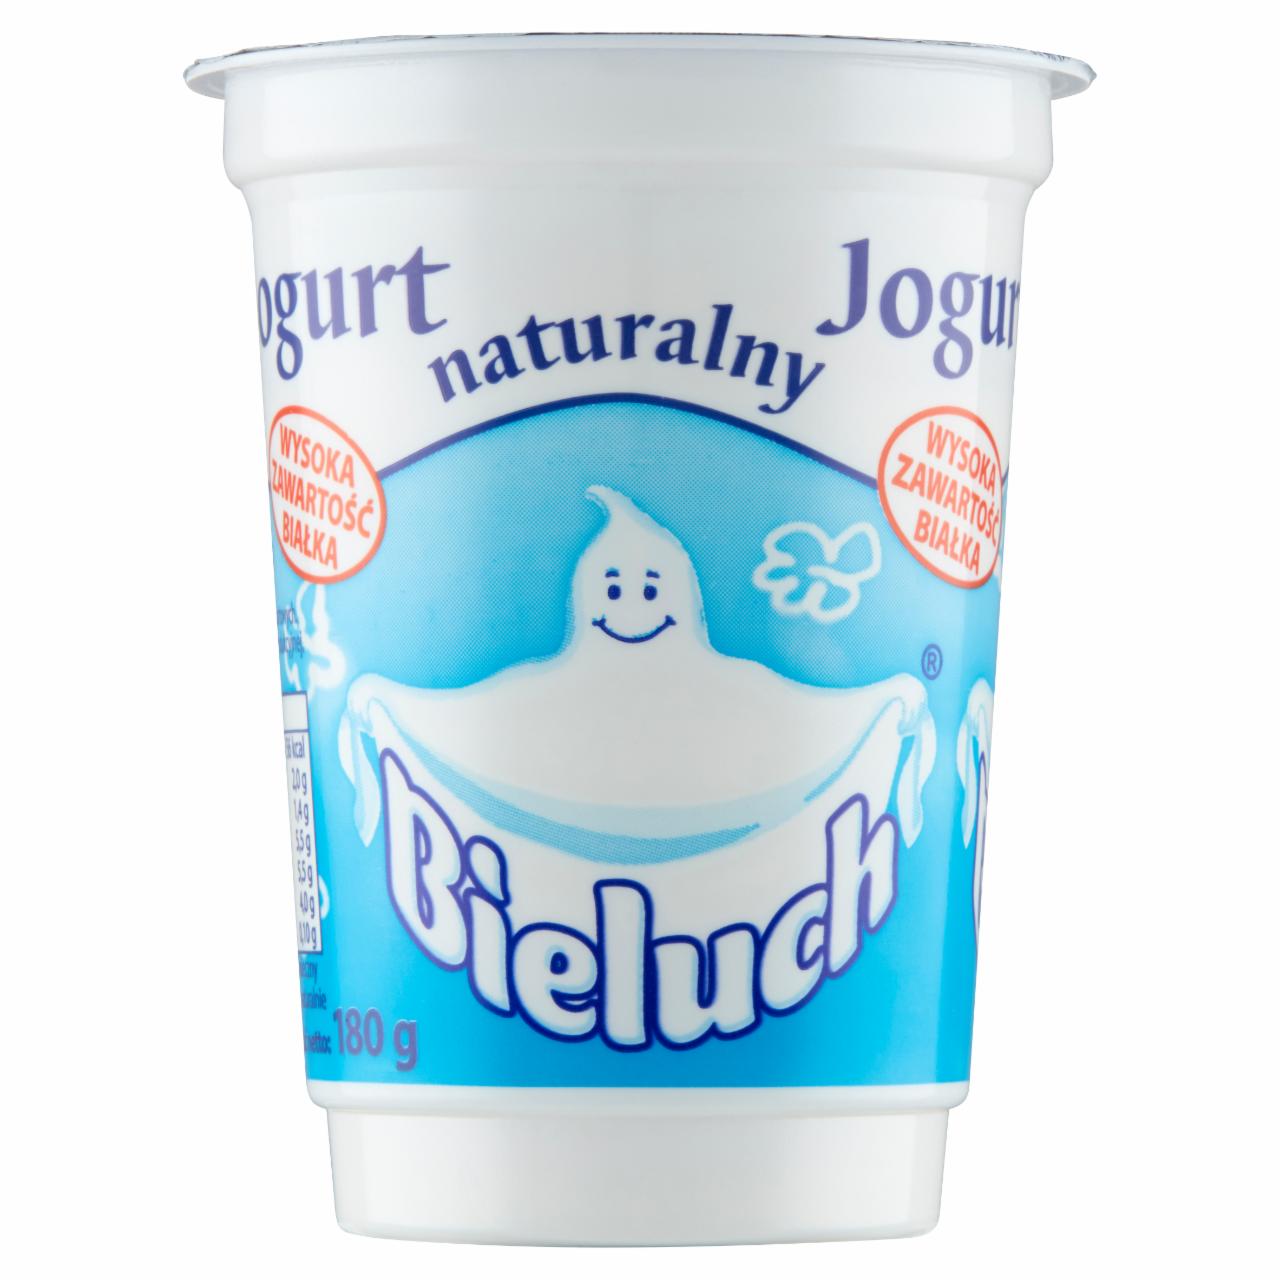 Photo - Bieluch Natural Yoghurt 180 g